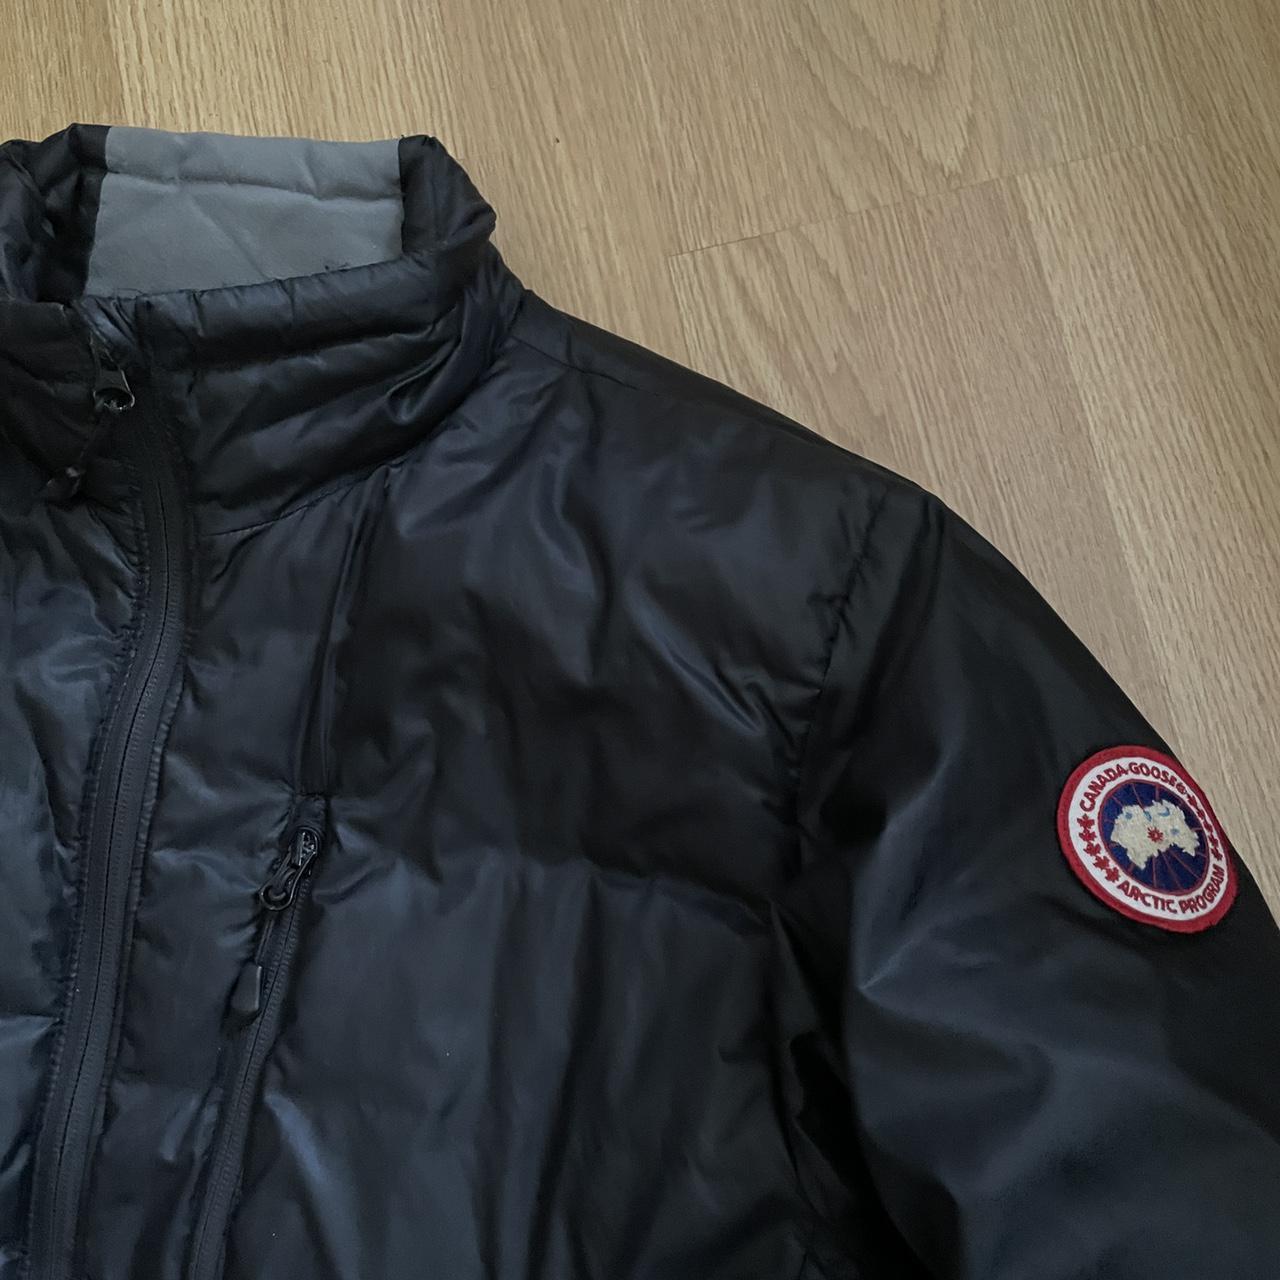 Product Image 2 - Canada Goose Lodge Jacket 

Size